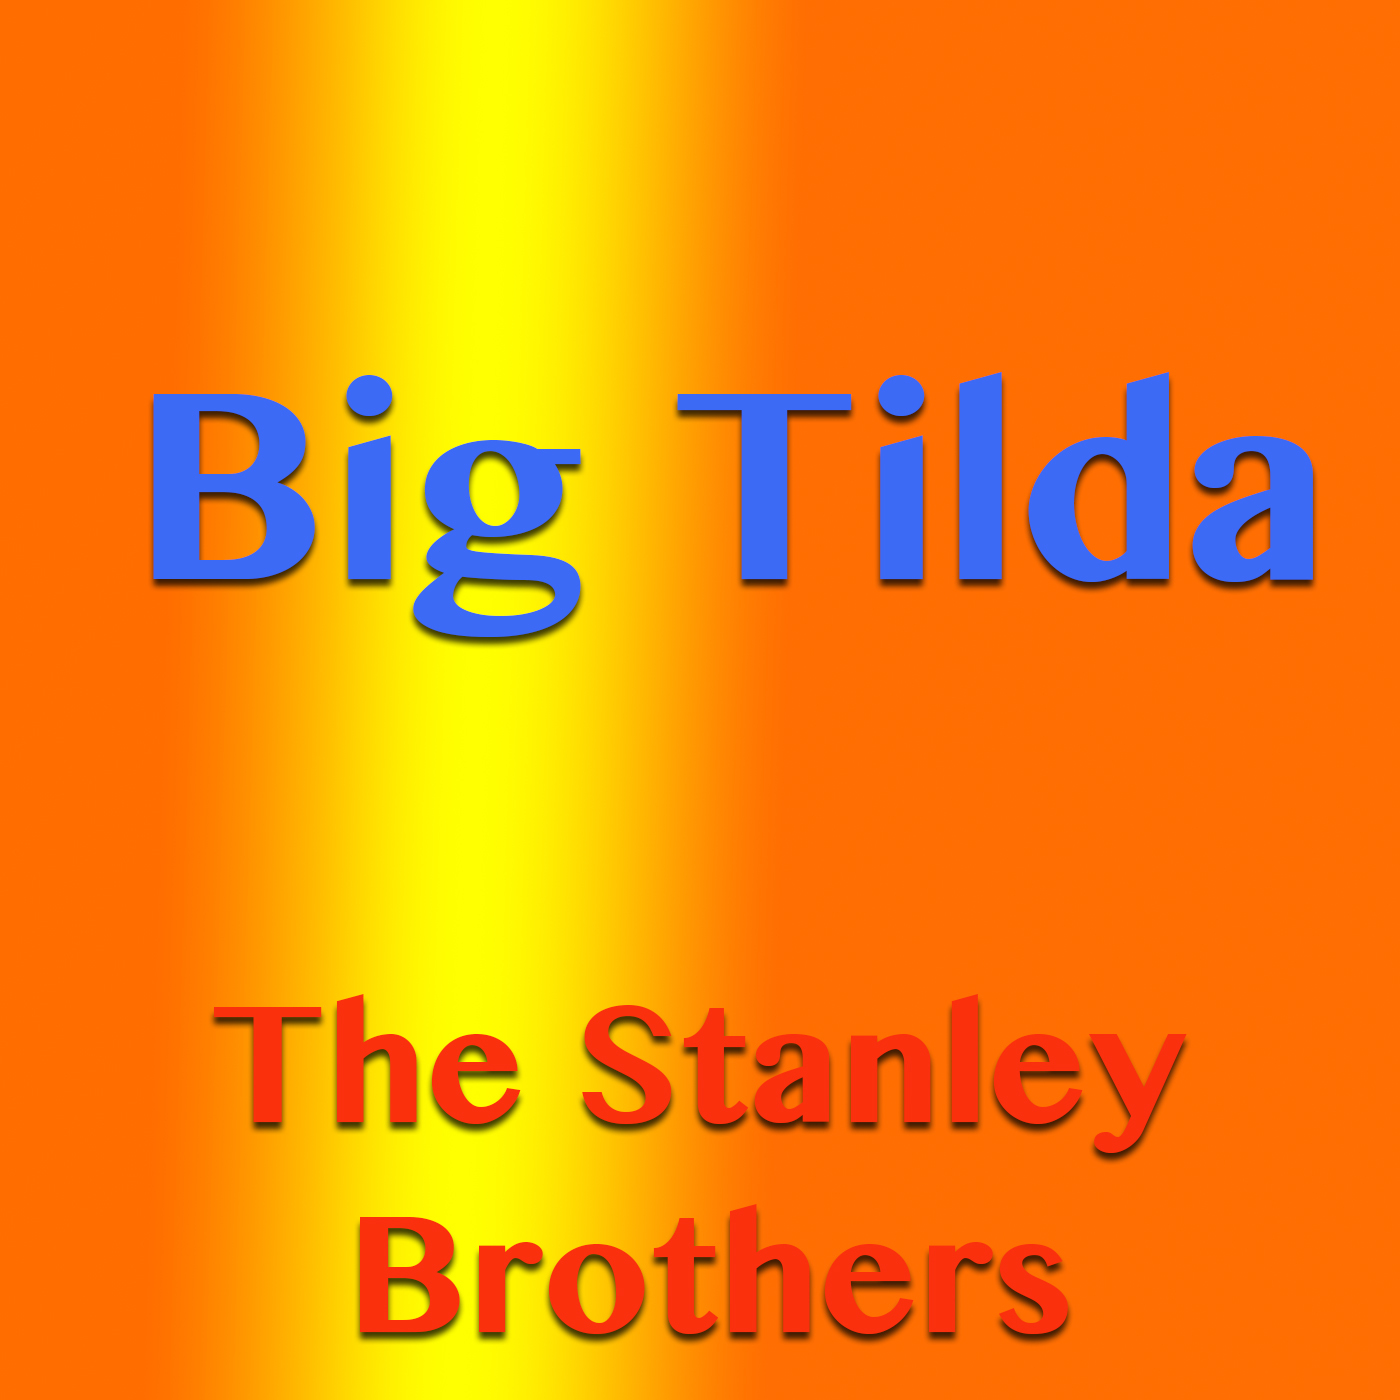 Big Tilda